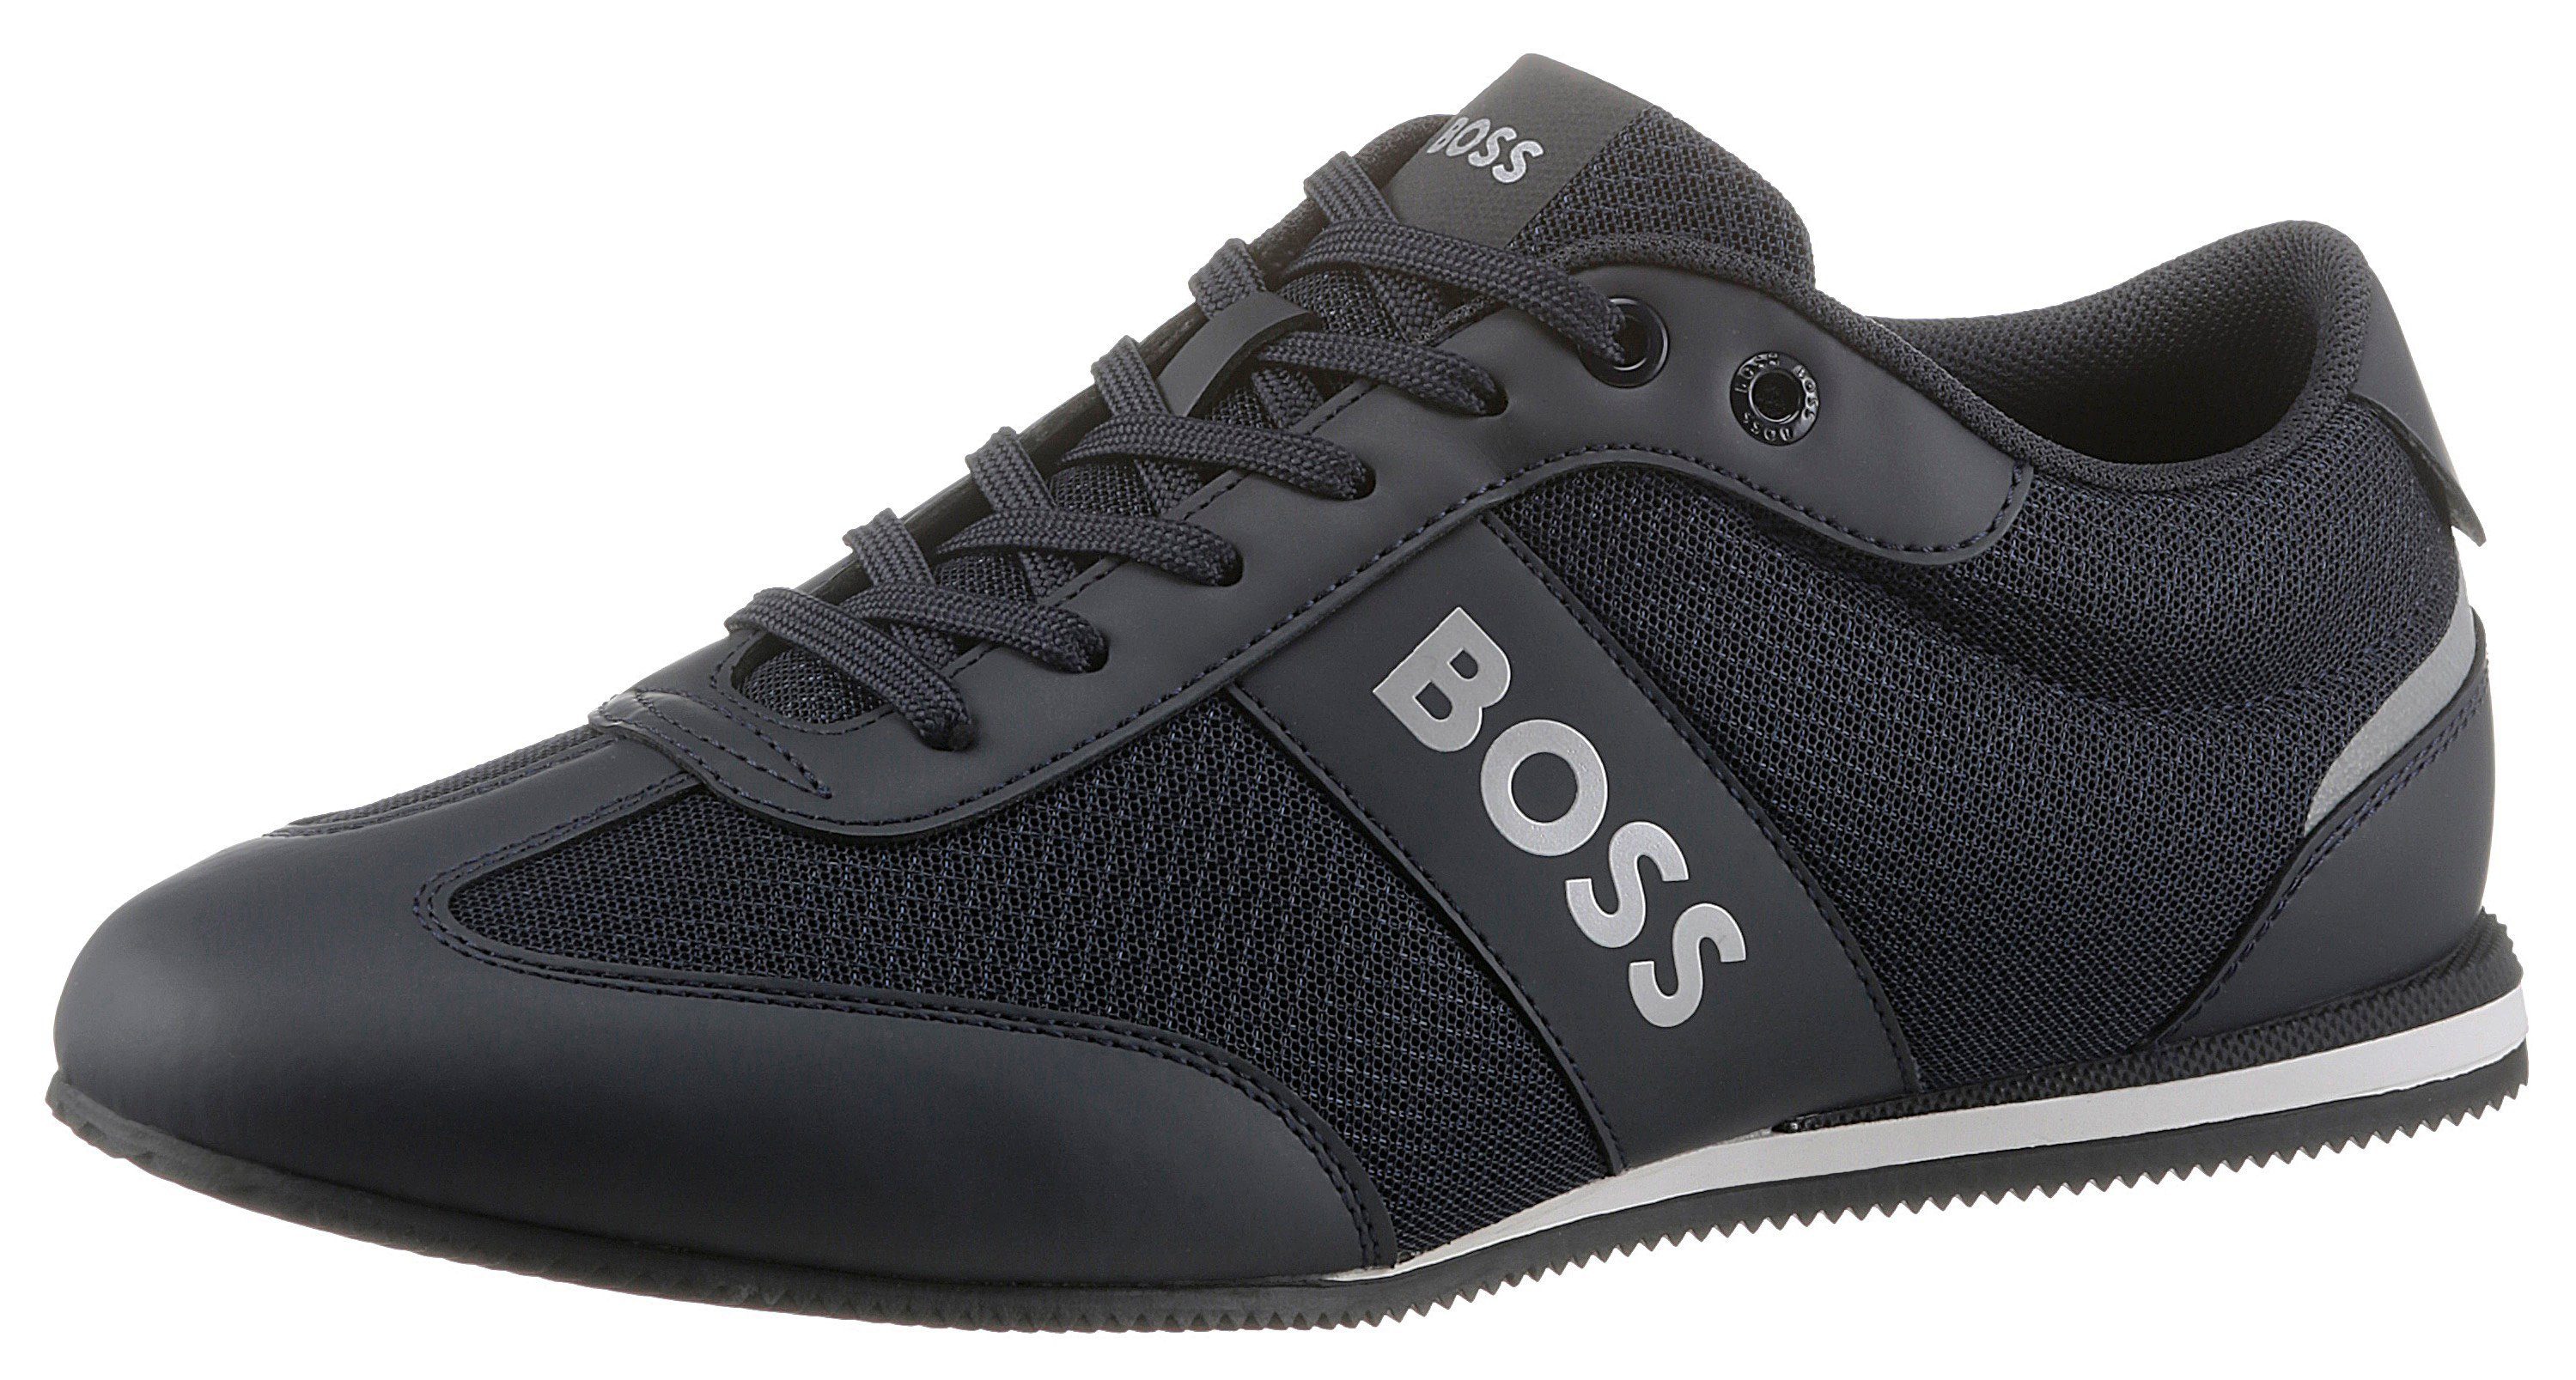 Rote Hugo Boss Schuhe online kaufen | OTTO